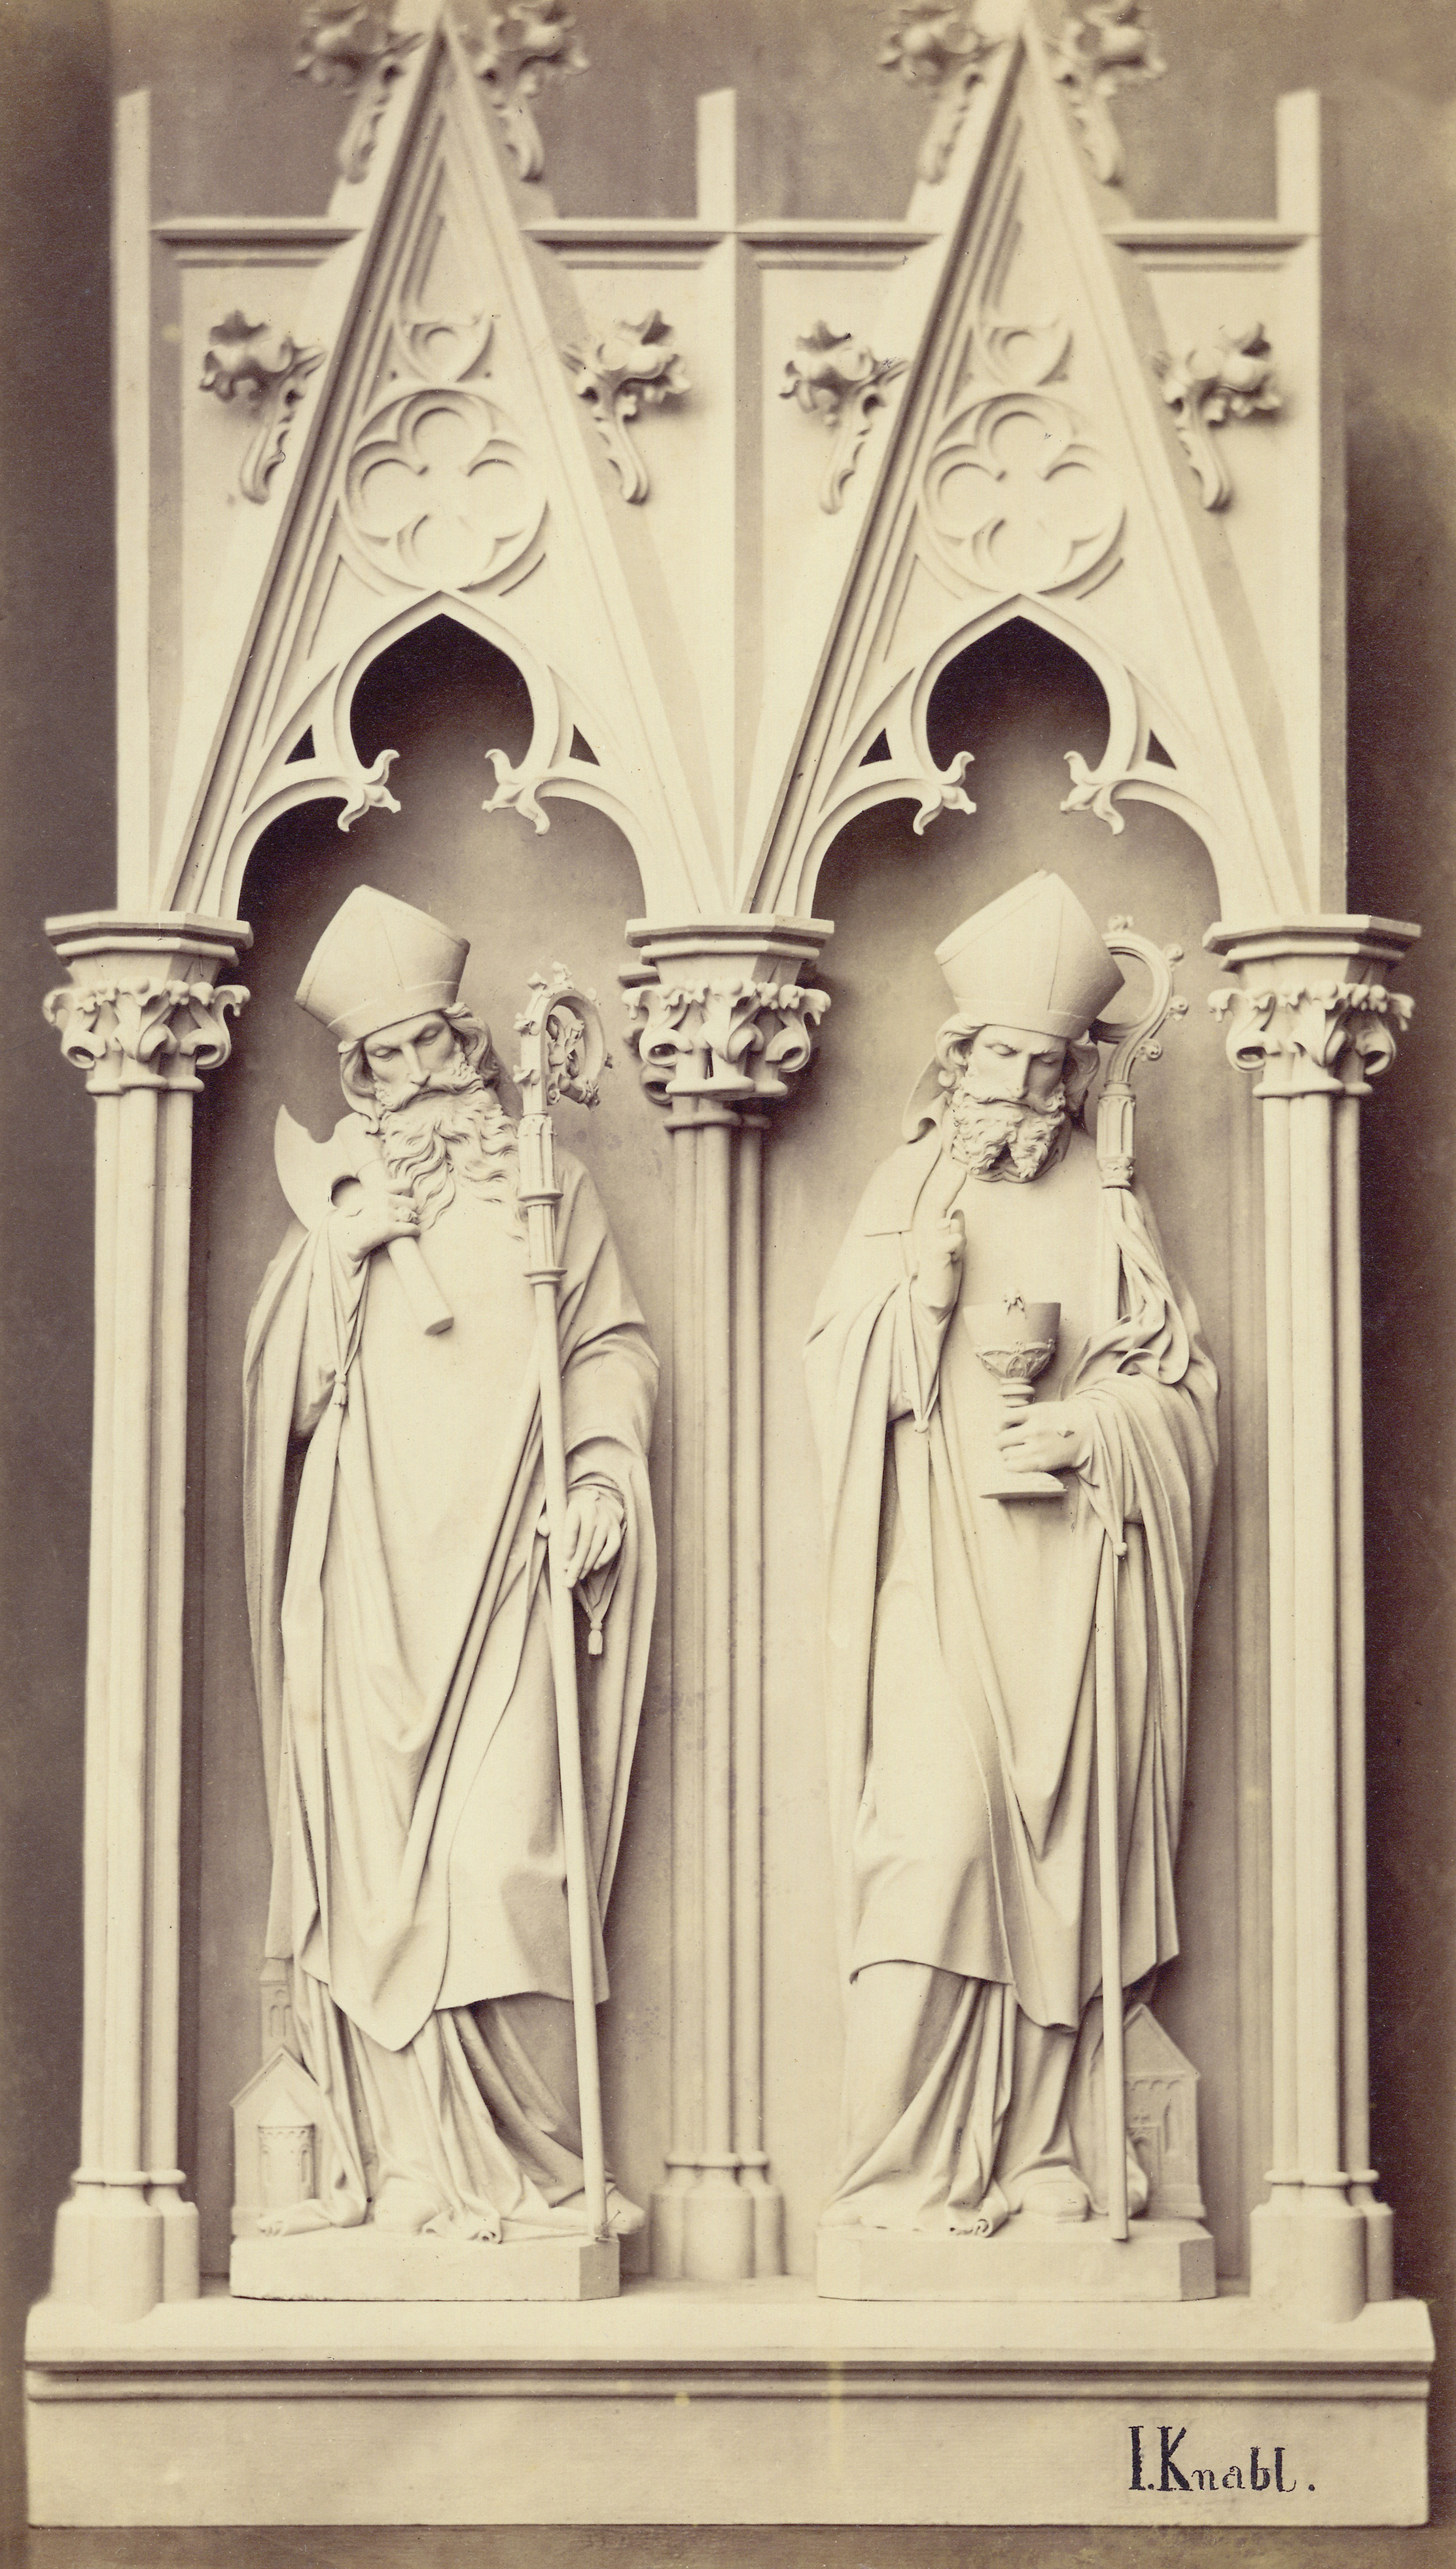 Joseph Knabl (1819 – 1881), Zwei heilige Bischöfe I, undatiert, derzeit unbekannter Standort, signiert unten rechts: „I. Knabl.“, Photographie, 2. H. 19. Jahrhundert, Museum Fließ